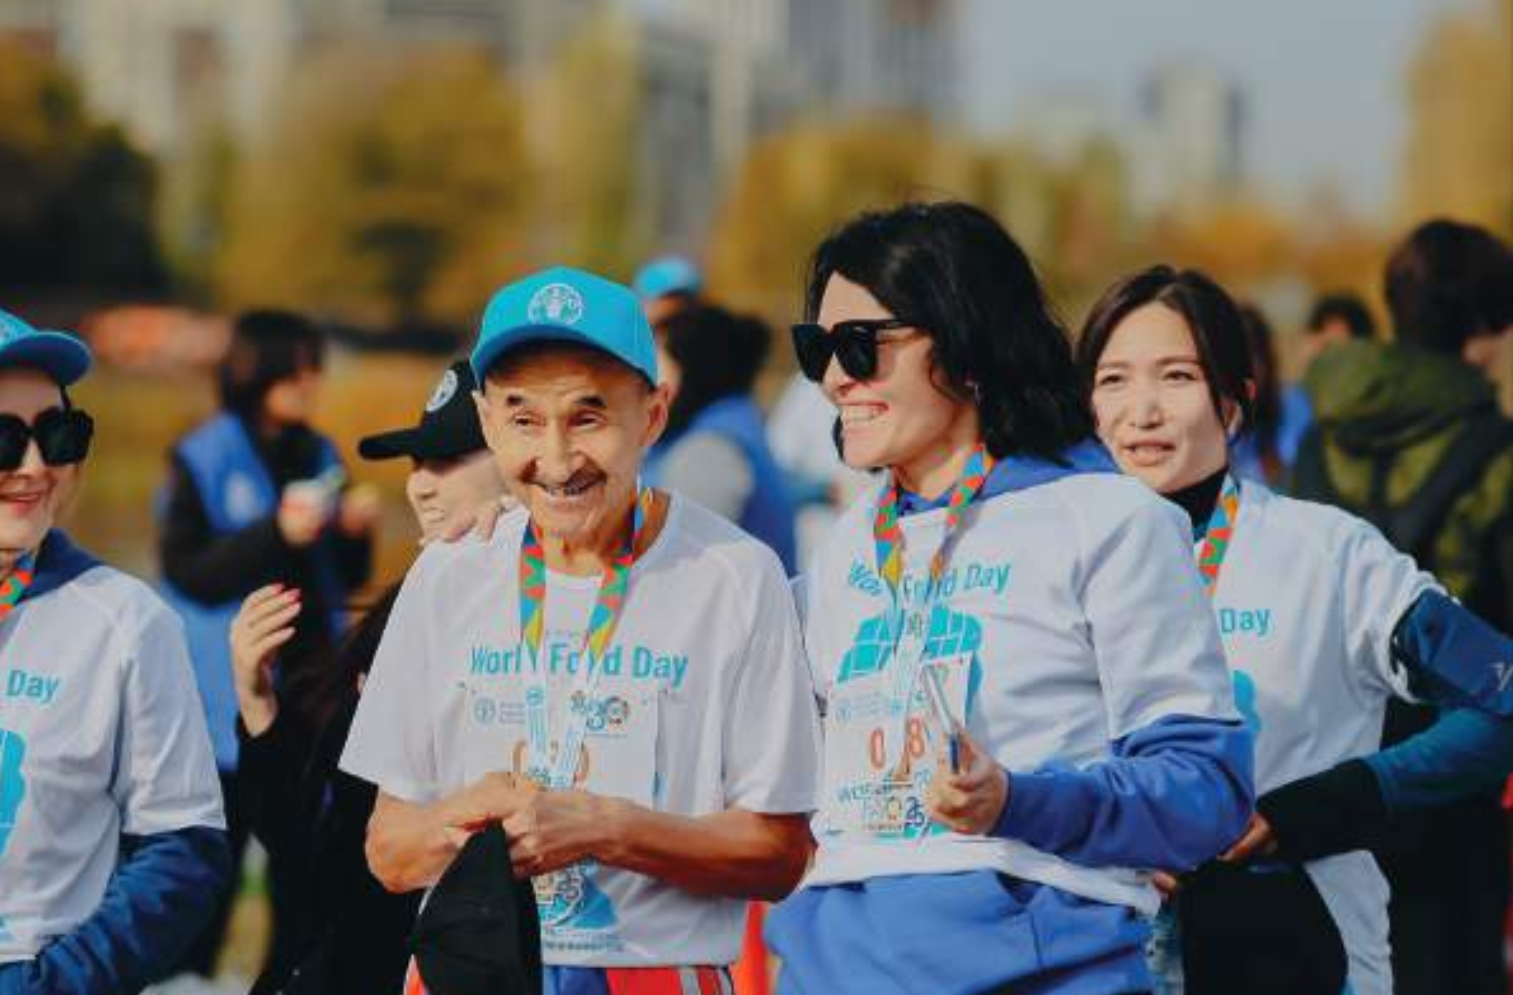 ООН выпустила статистический сборник по старшему поколению Казахстана для измерения индекса активного долголетия.